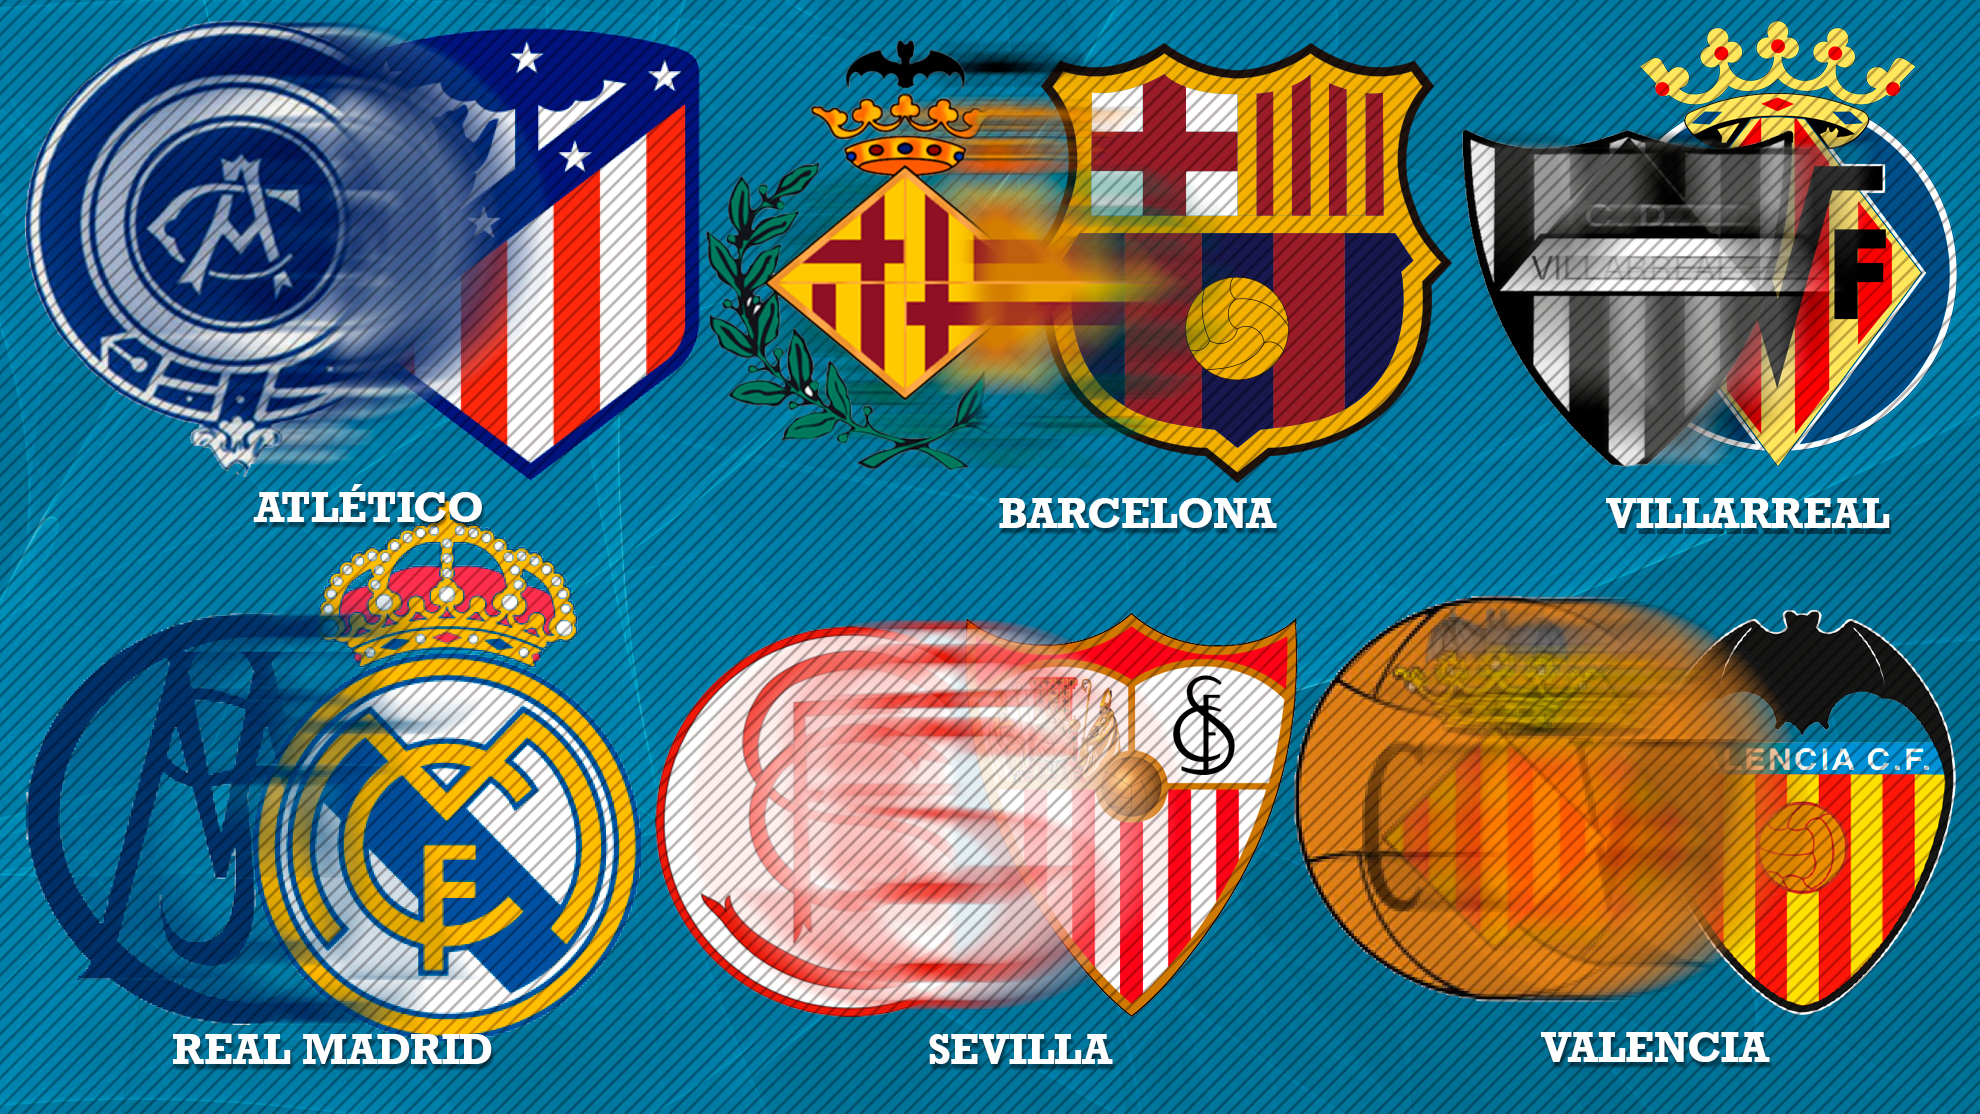 Qué significa el escudo del Real Madrid?